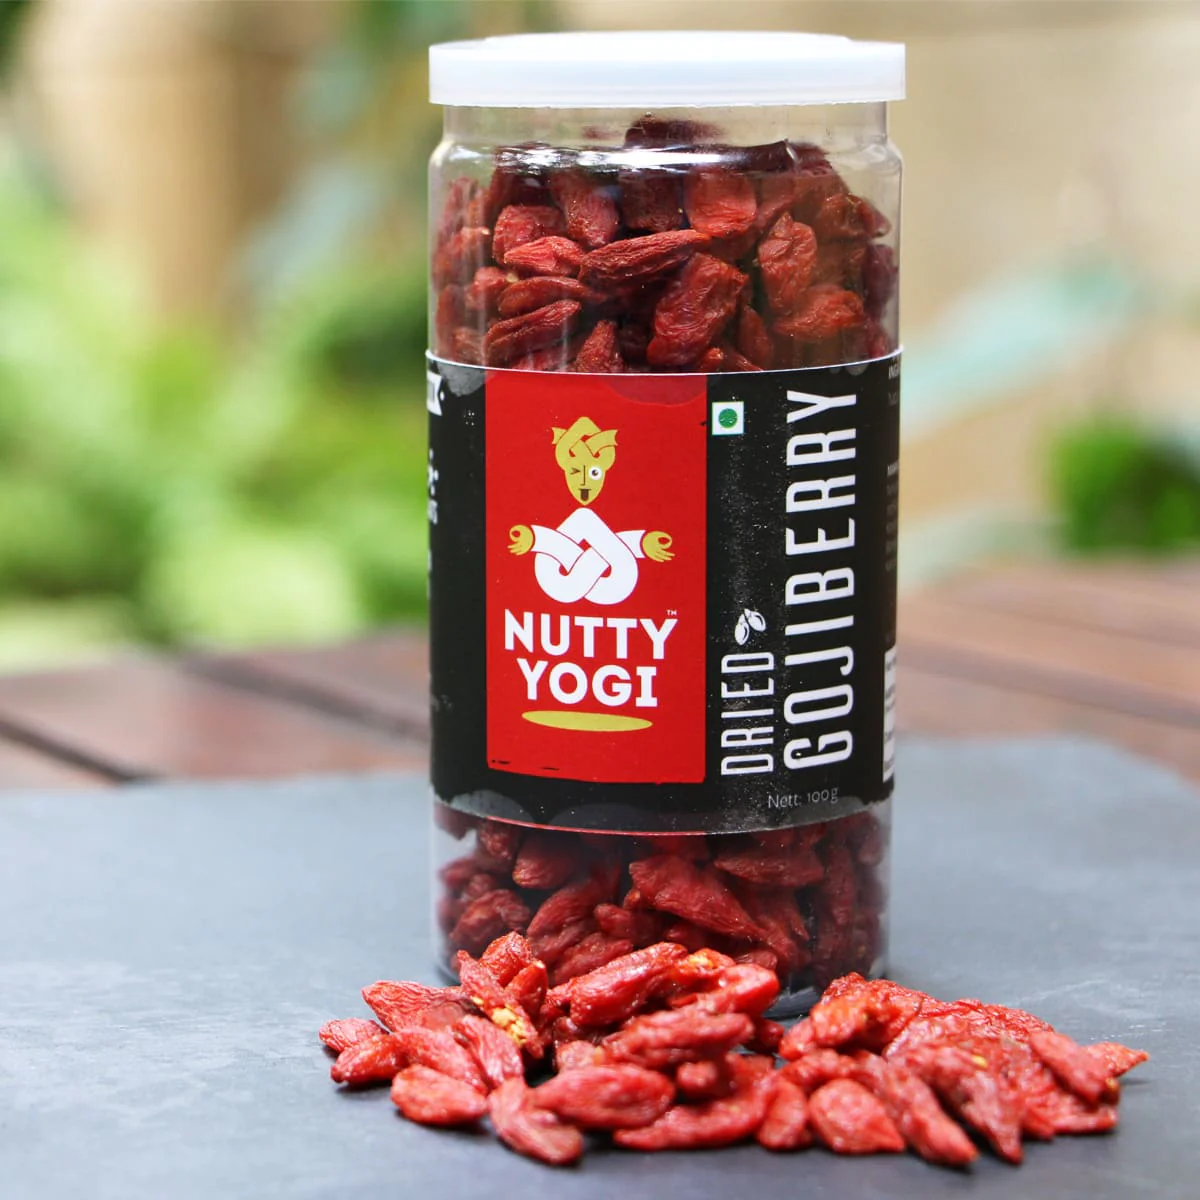 Product: Nutty Yogi Dried Goji Berry